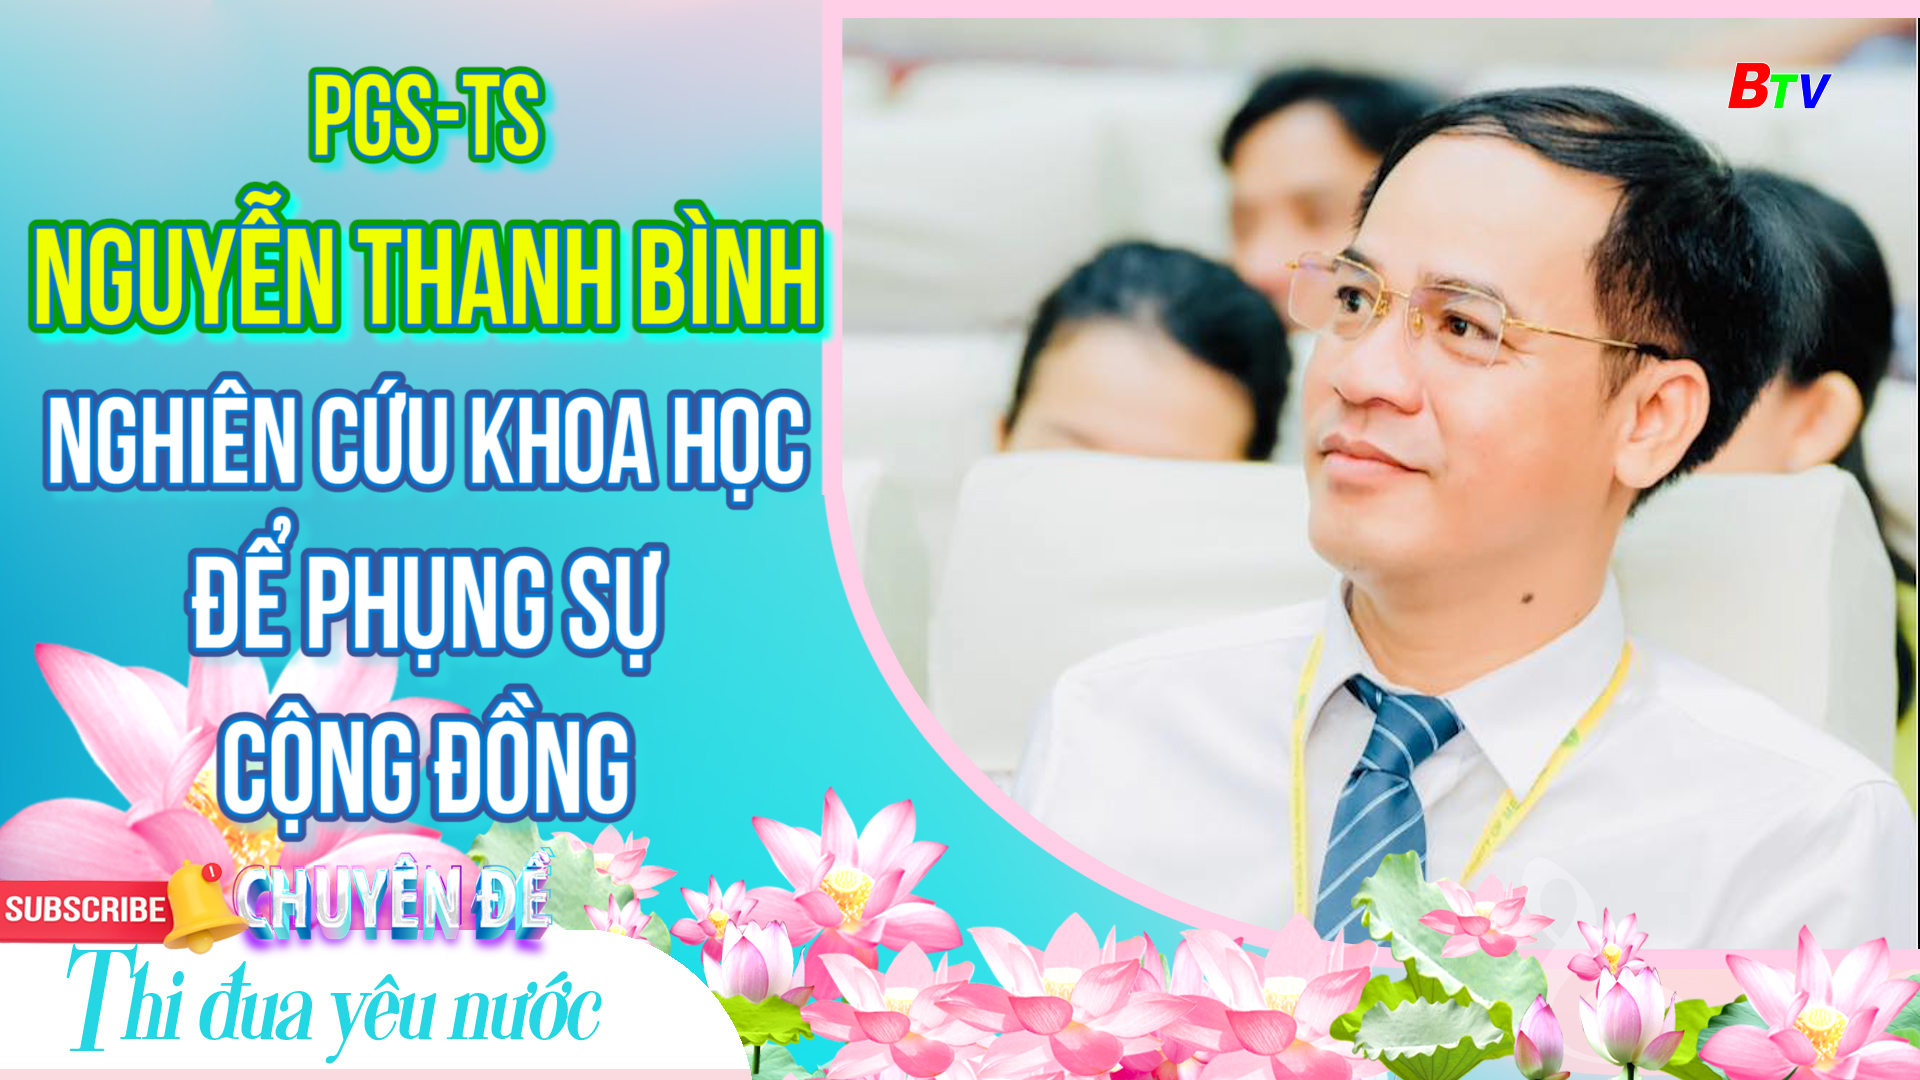 PGS-TS Nguyễn Thanh Bình - Nghiên cứu khoa học để phụng sự cộng đồng